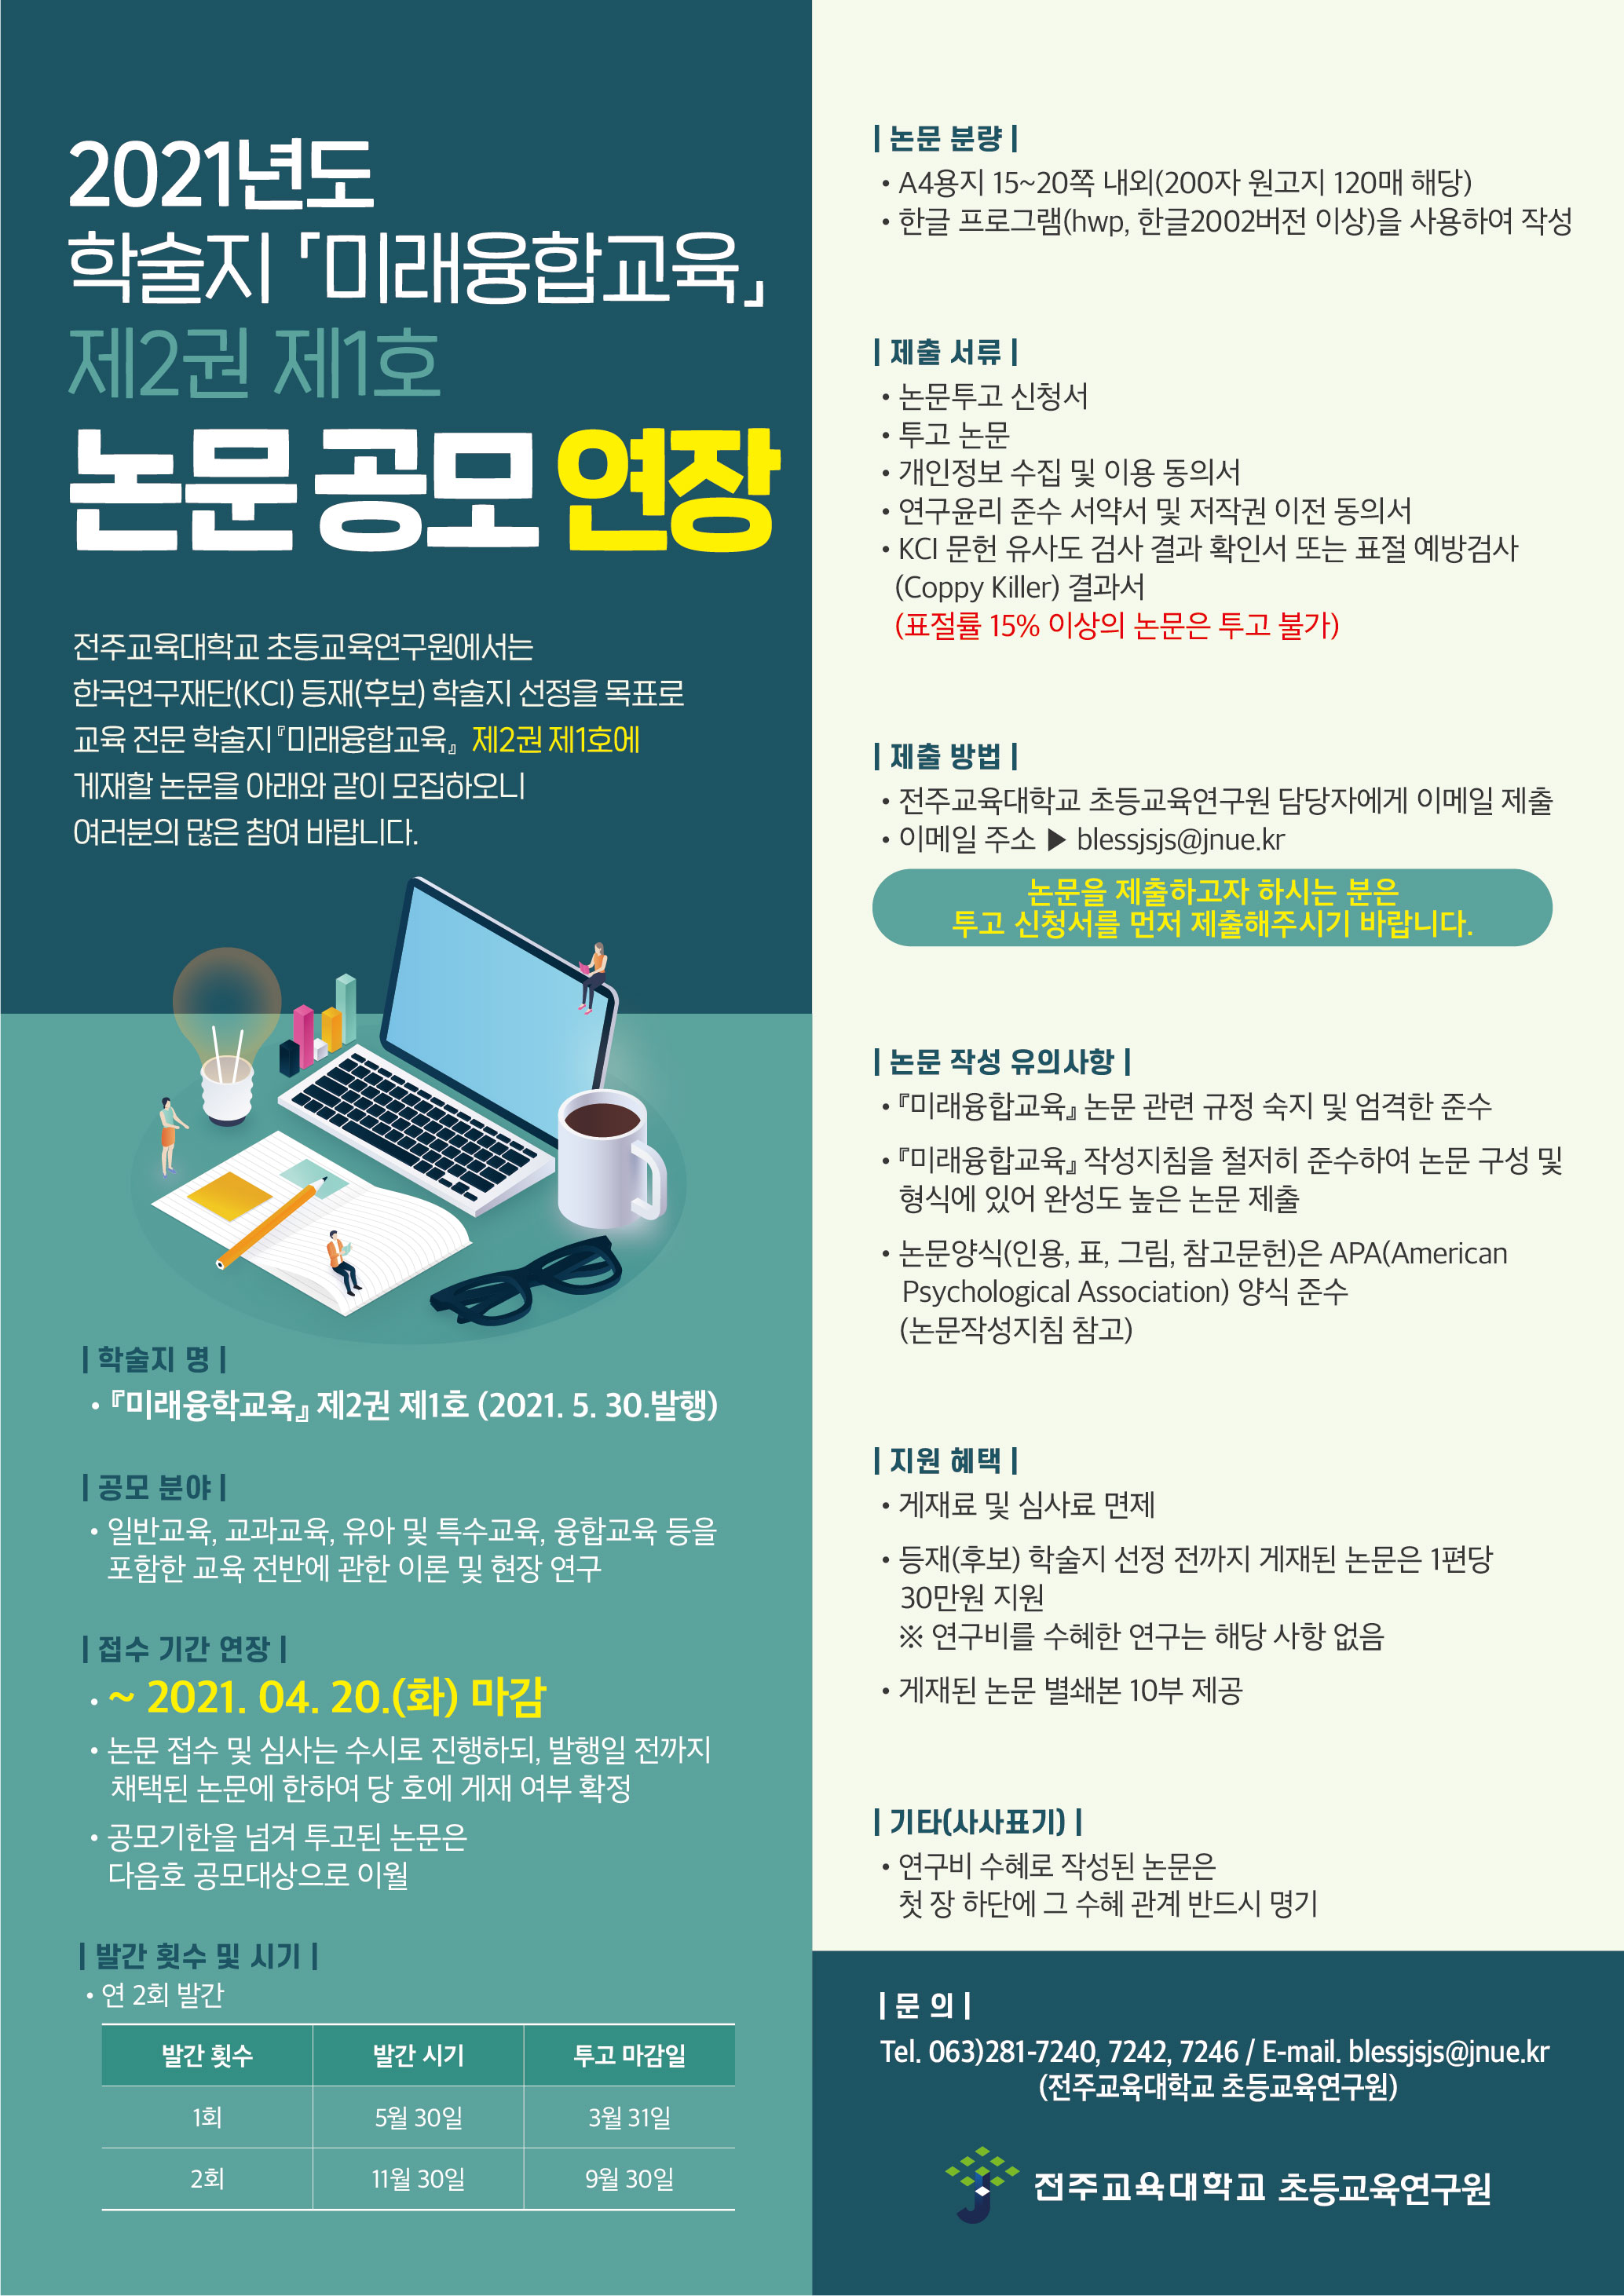 전주교육대학교 전문 학술지 『미래융합교육』 논문 모집 연장 안내